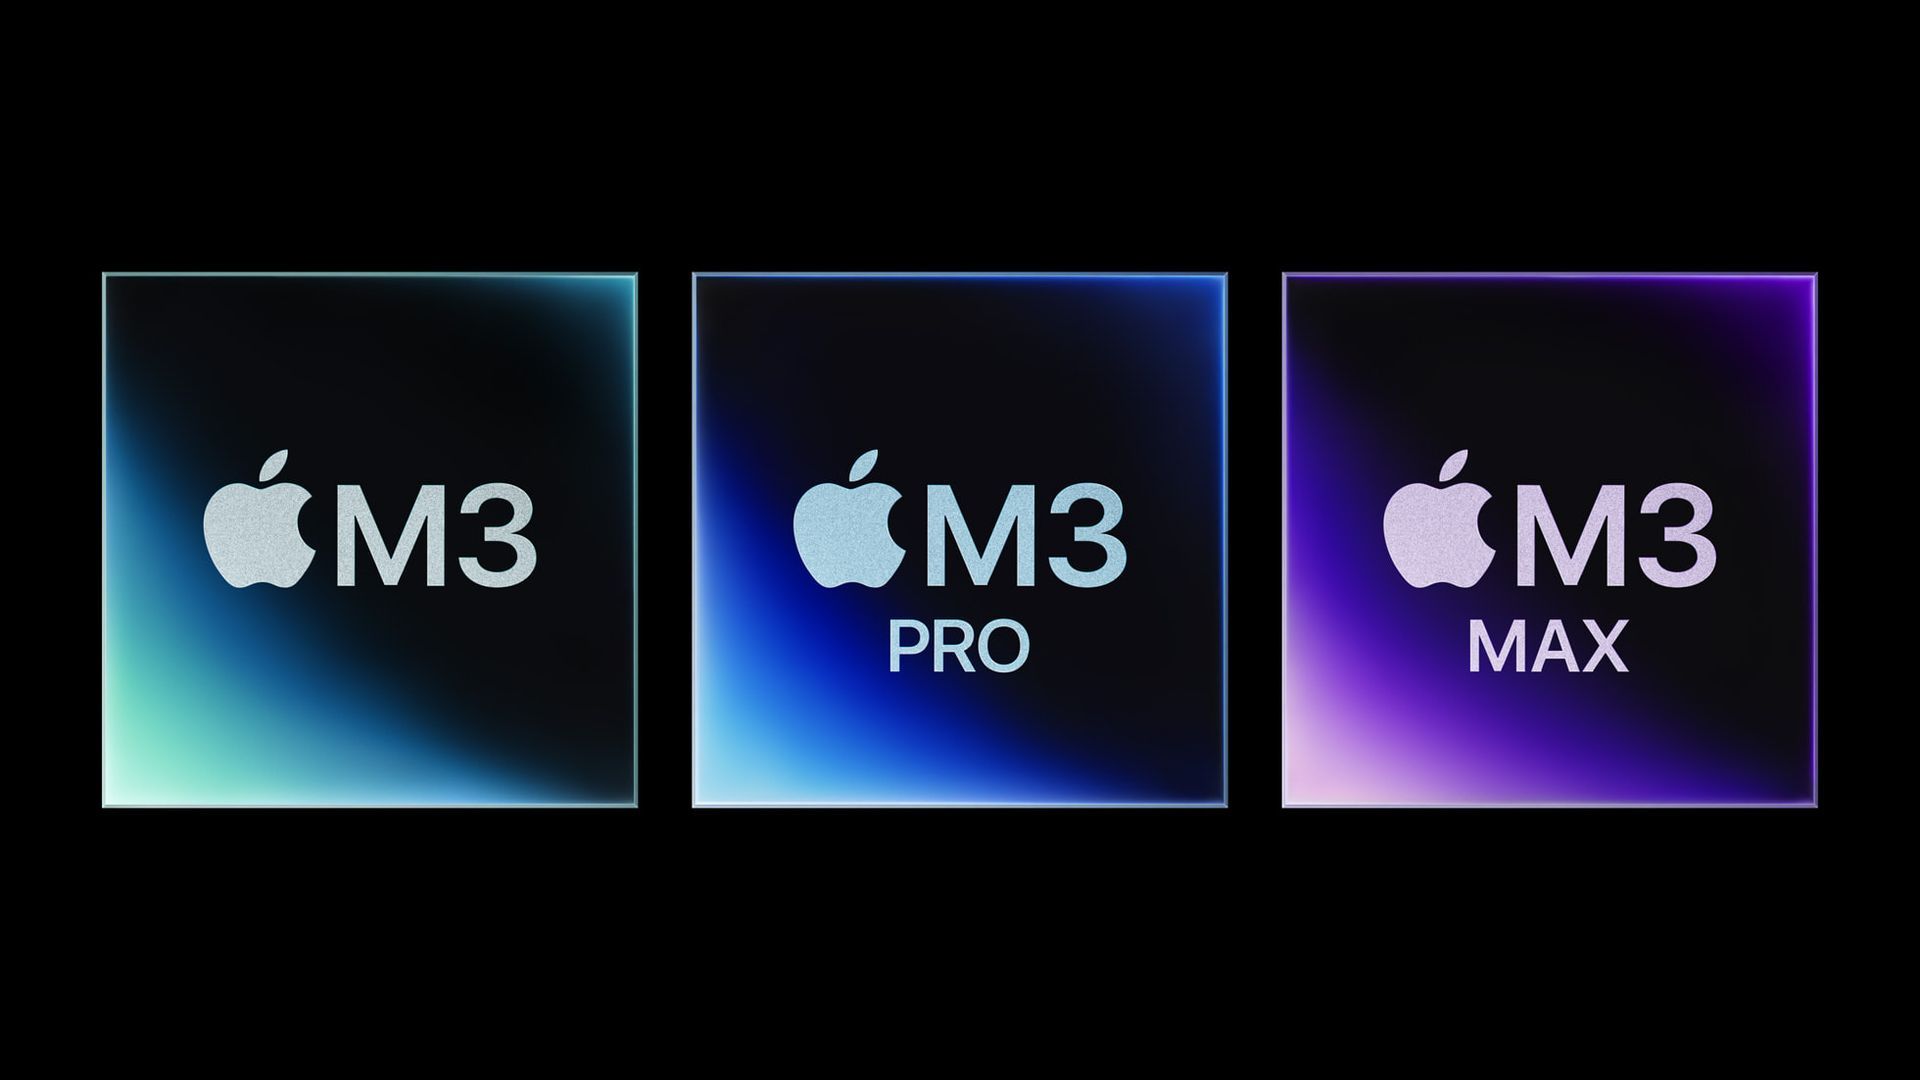 Podsumowanie wydarzenia Apple: MacBook Pro, chipy M3 i nowy iMac